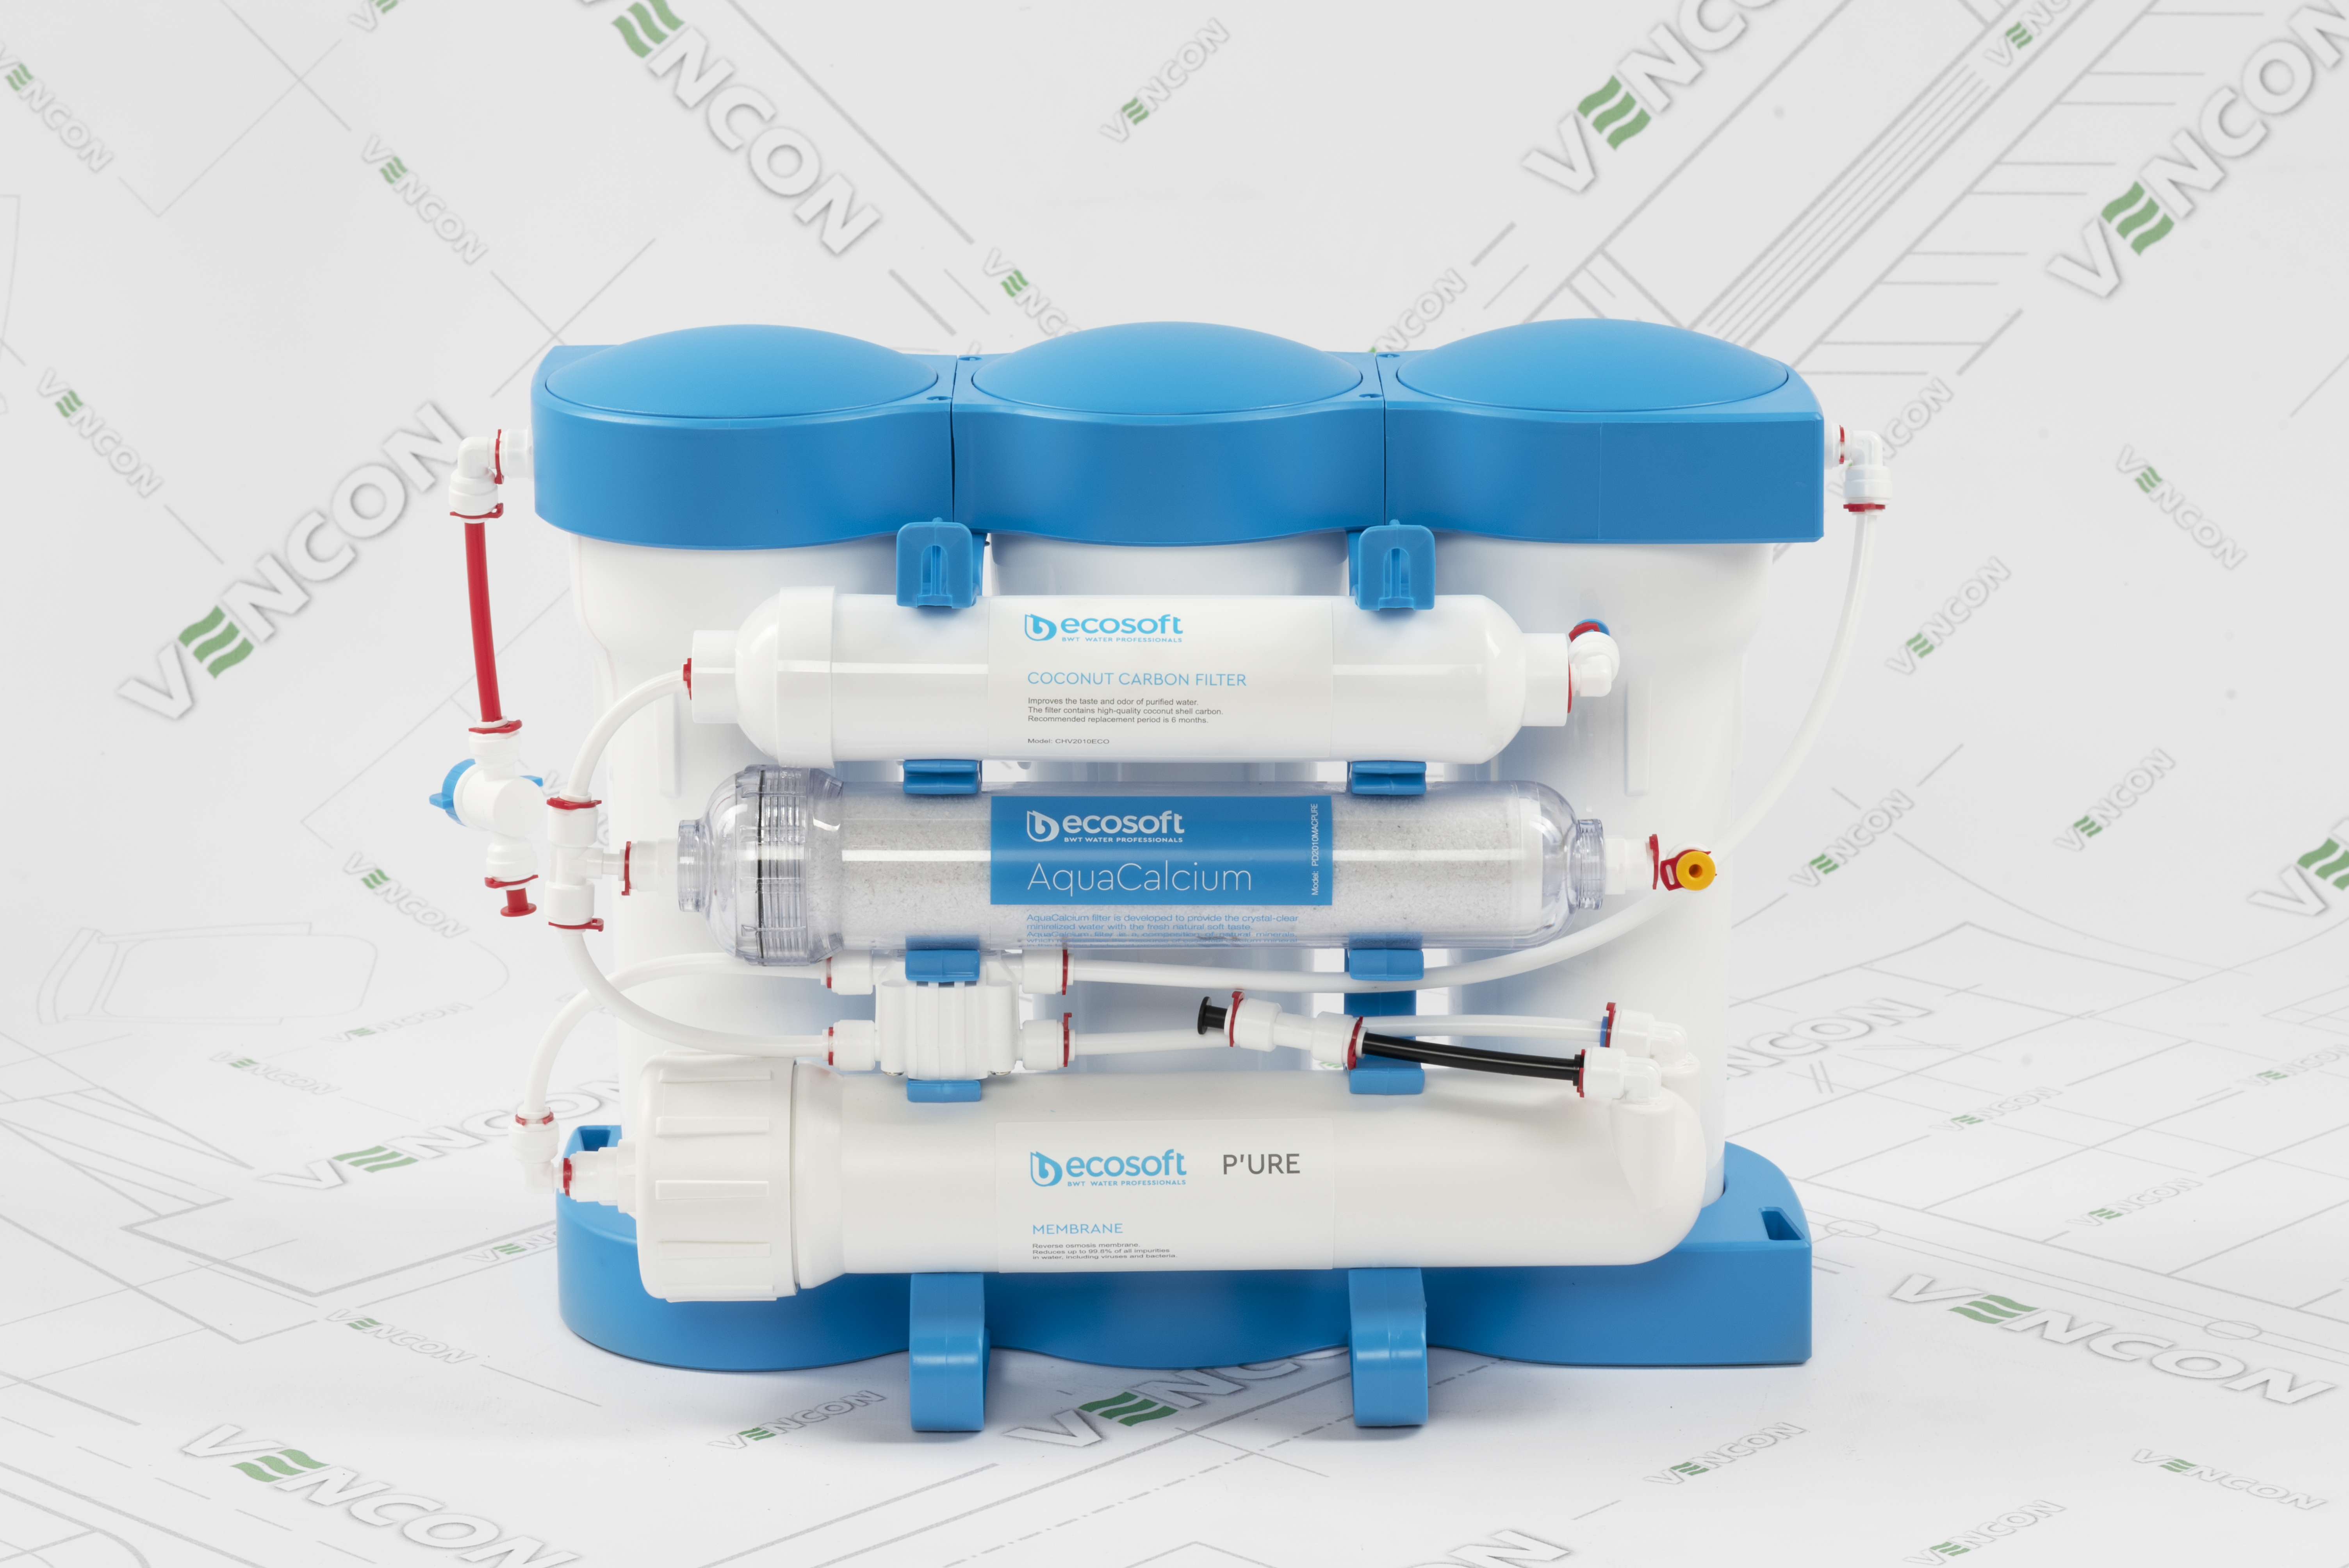 Фильтр для воды Ecosoft P`Ure AquaCalcium MO675MACPUREECO инструкция - изображение 6